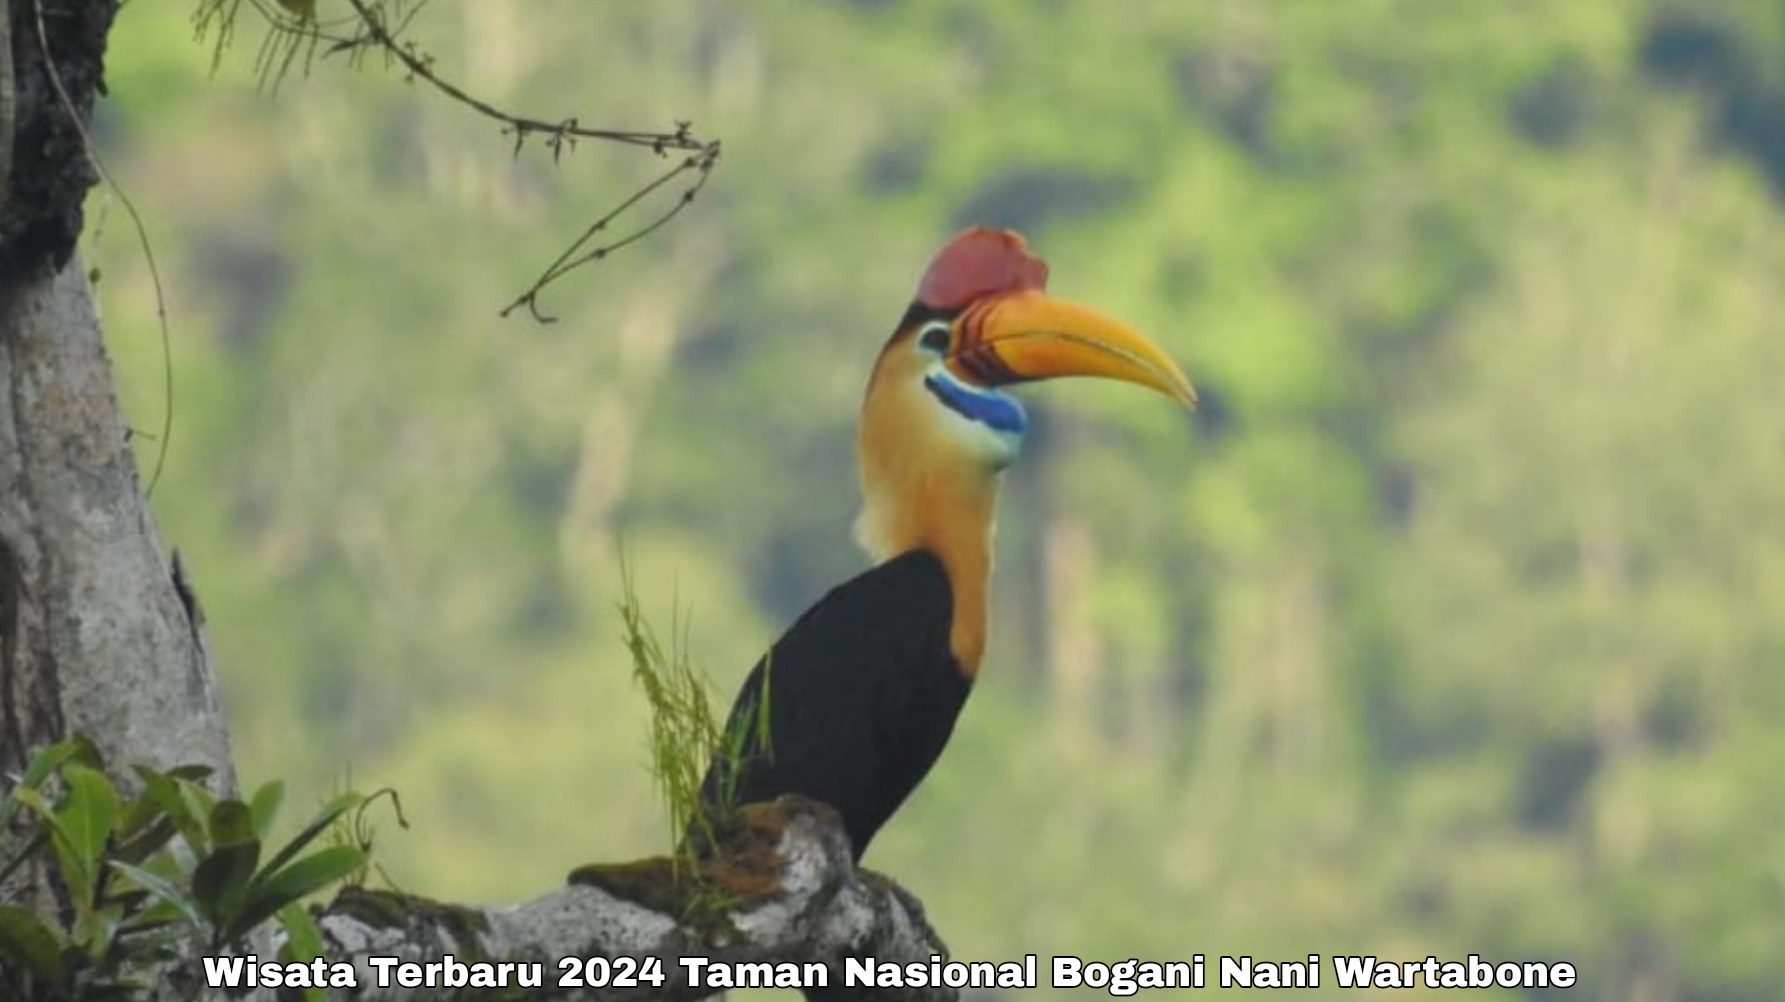 Intip Pesona Wisata Terbaru 2024 Taman Nasional Bogani Nani Wartabone Sulawesi